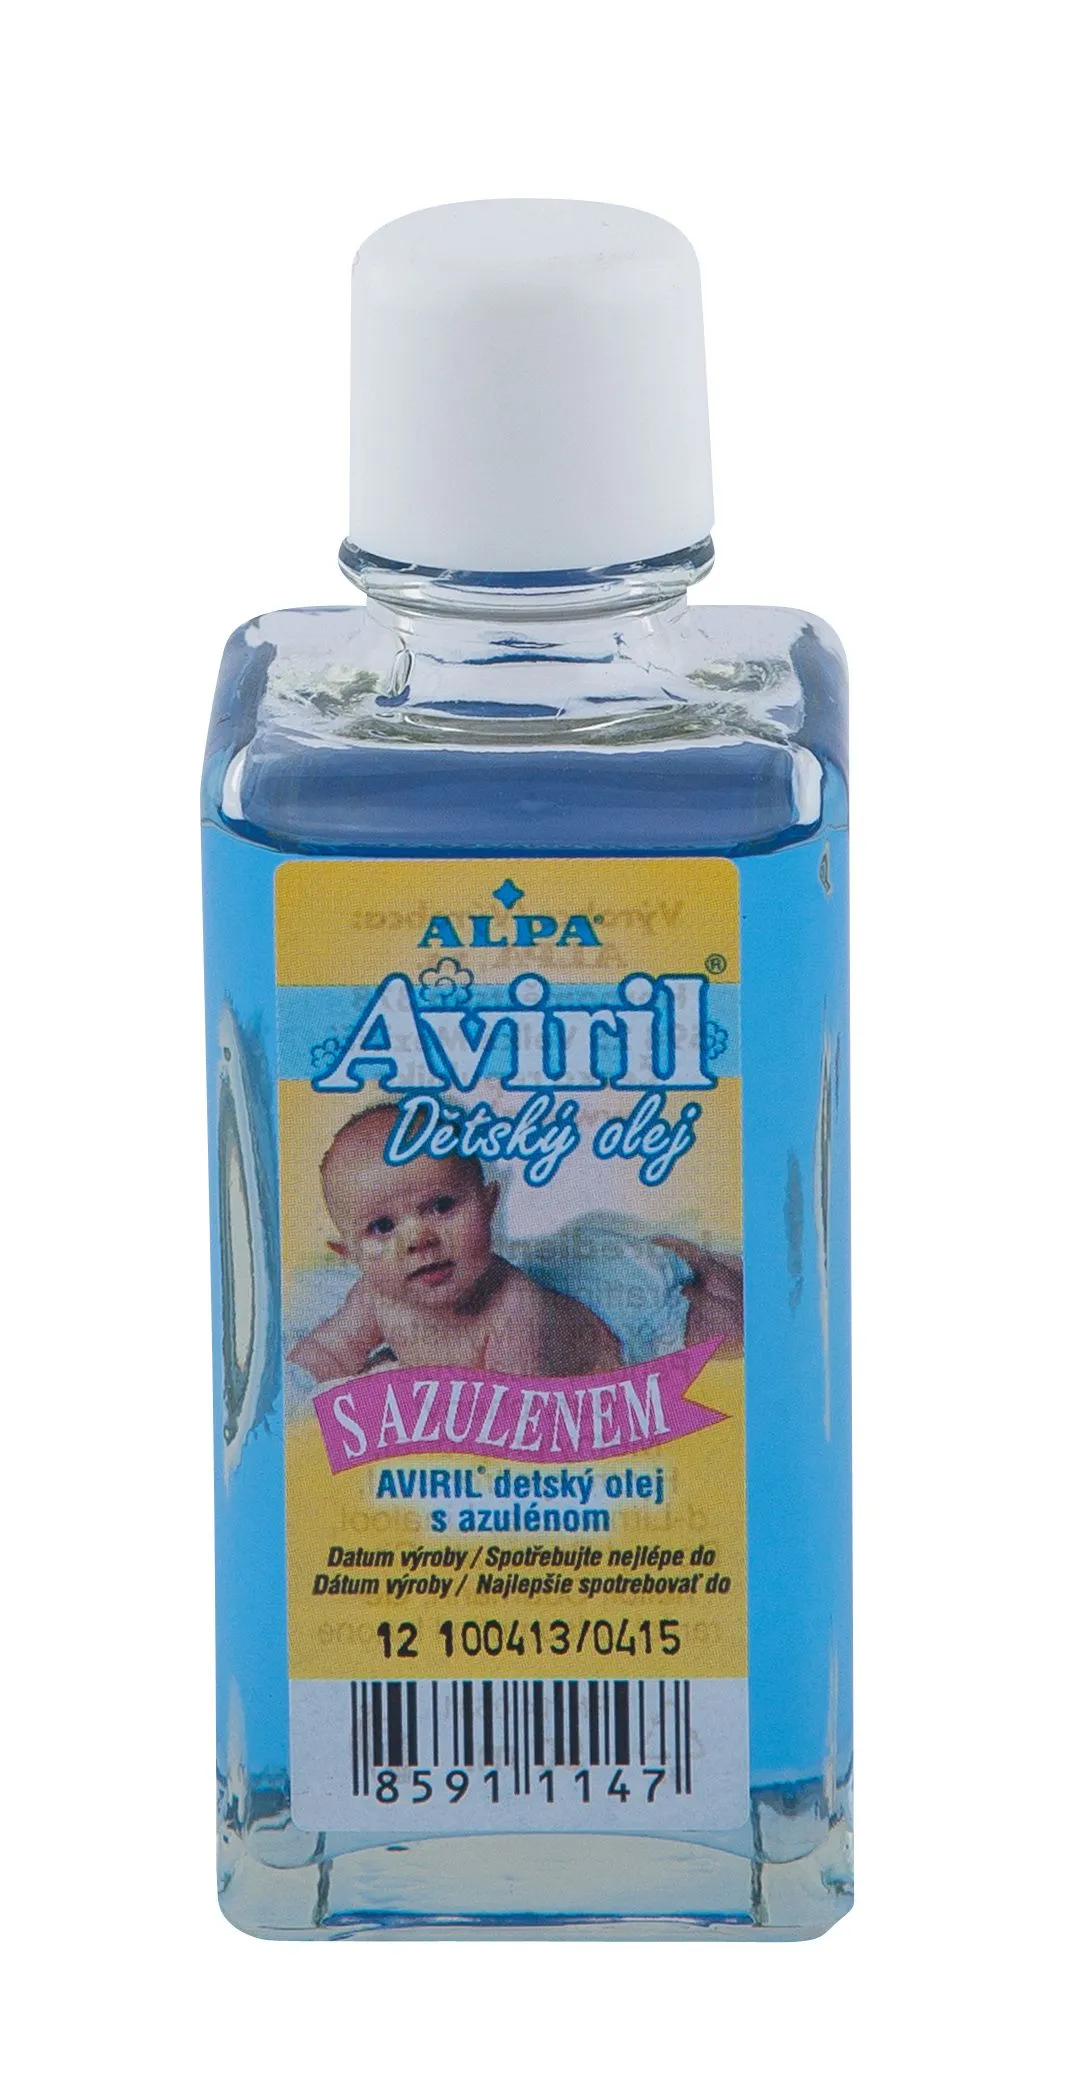 Alpa Aviril Dětský olej s azulenem